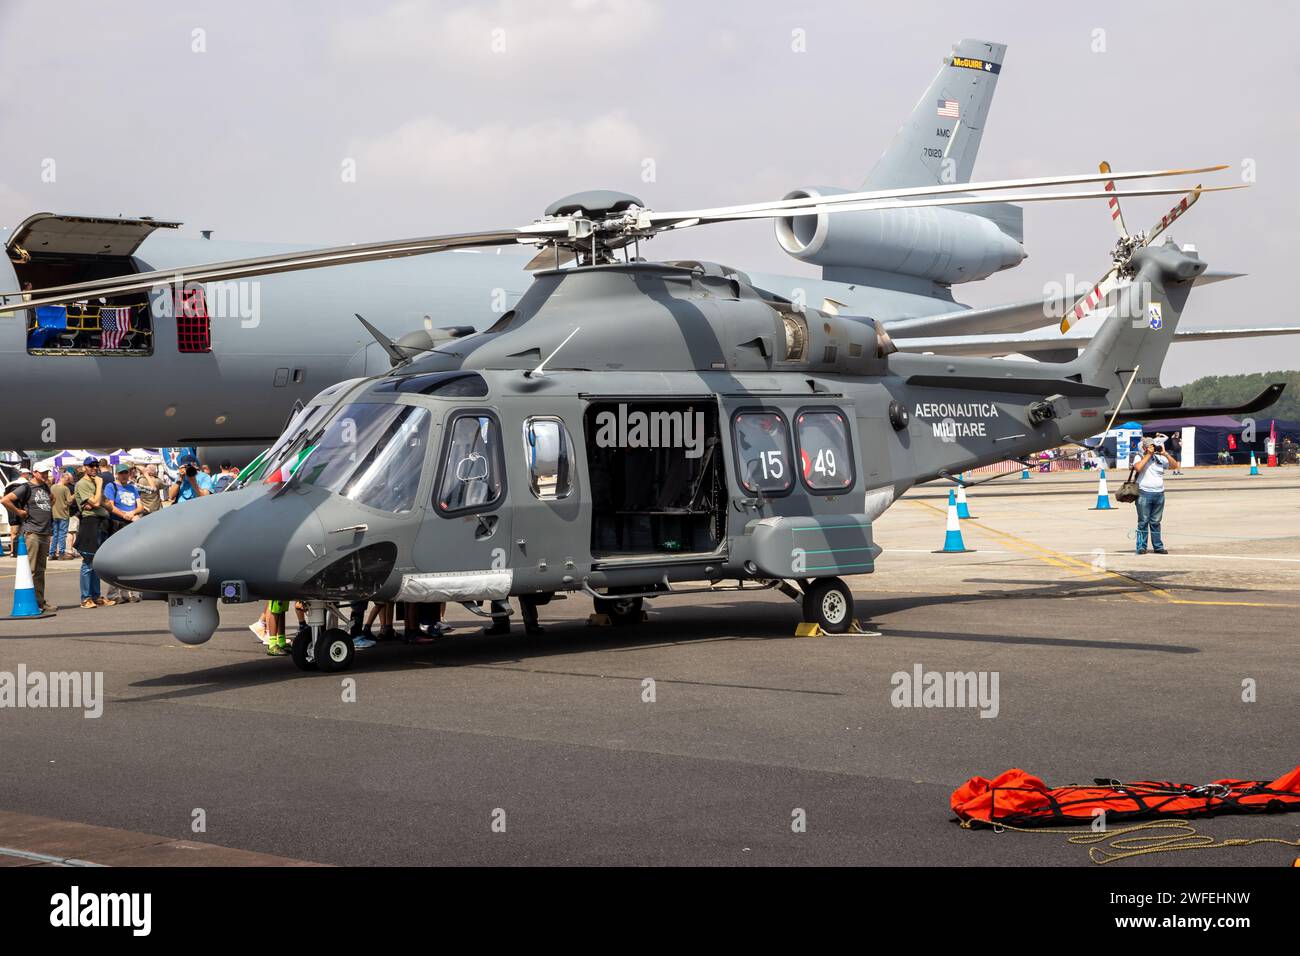 Elicottero da combattimento AgustaWestland AW139 (HH-139A) in mostra presso la base aerea RAF di Fairford. Regno Unito - 13 luglio 2018 Foto Stock